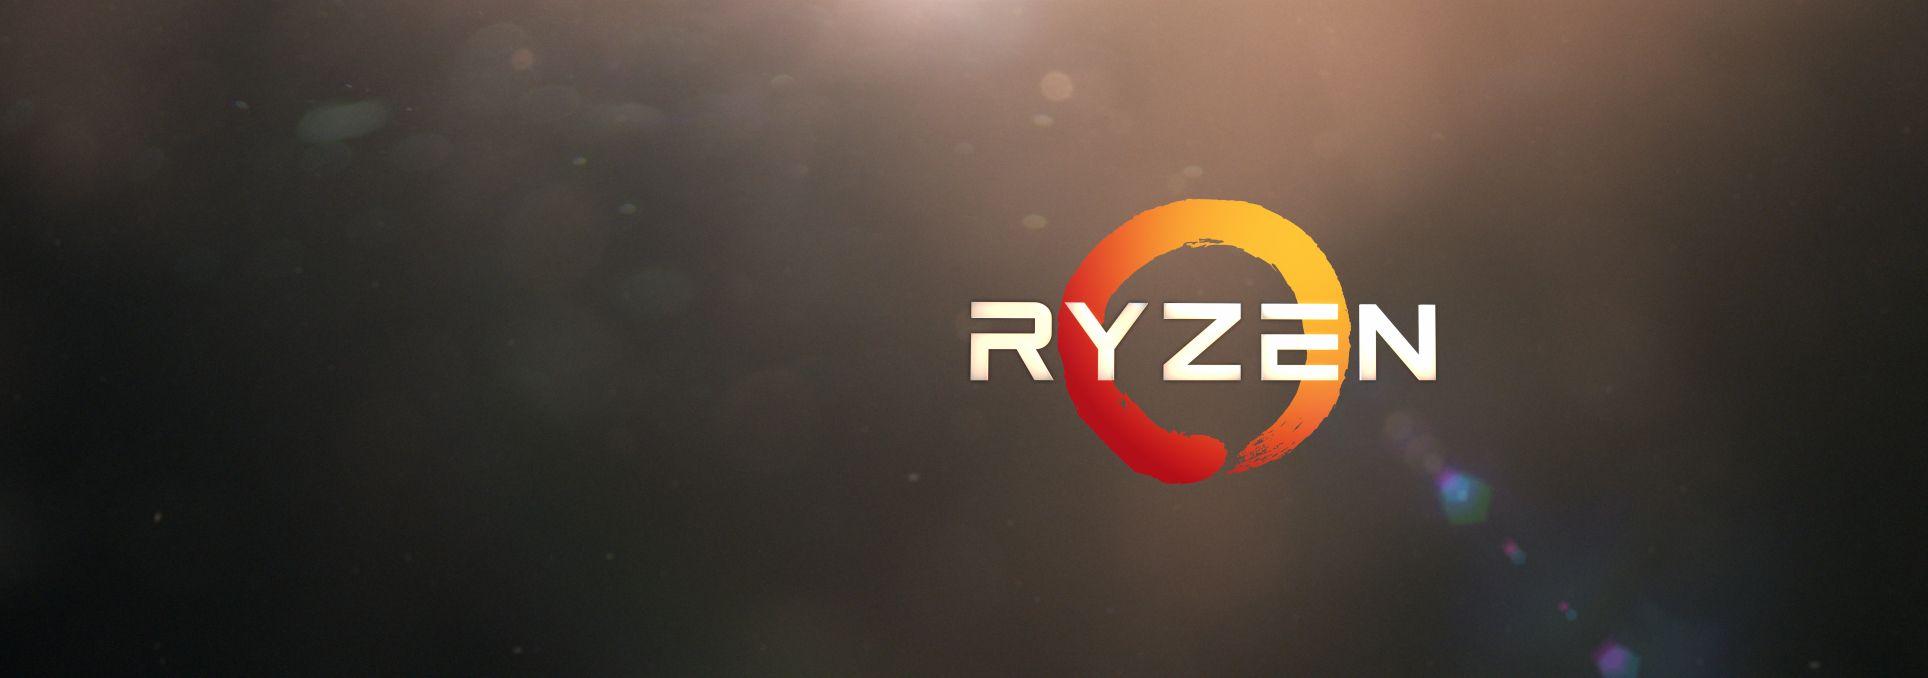 AMD Ryzen Logo - AMD Shows Progress as Ryzen Launch Looms -- The Motley Fool